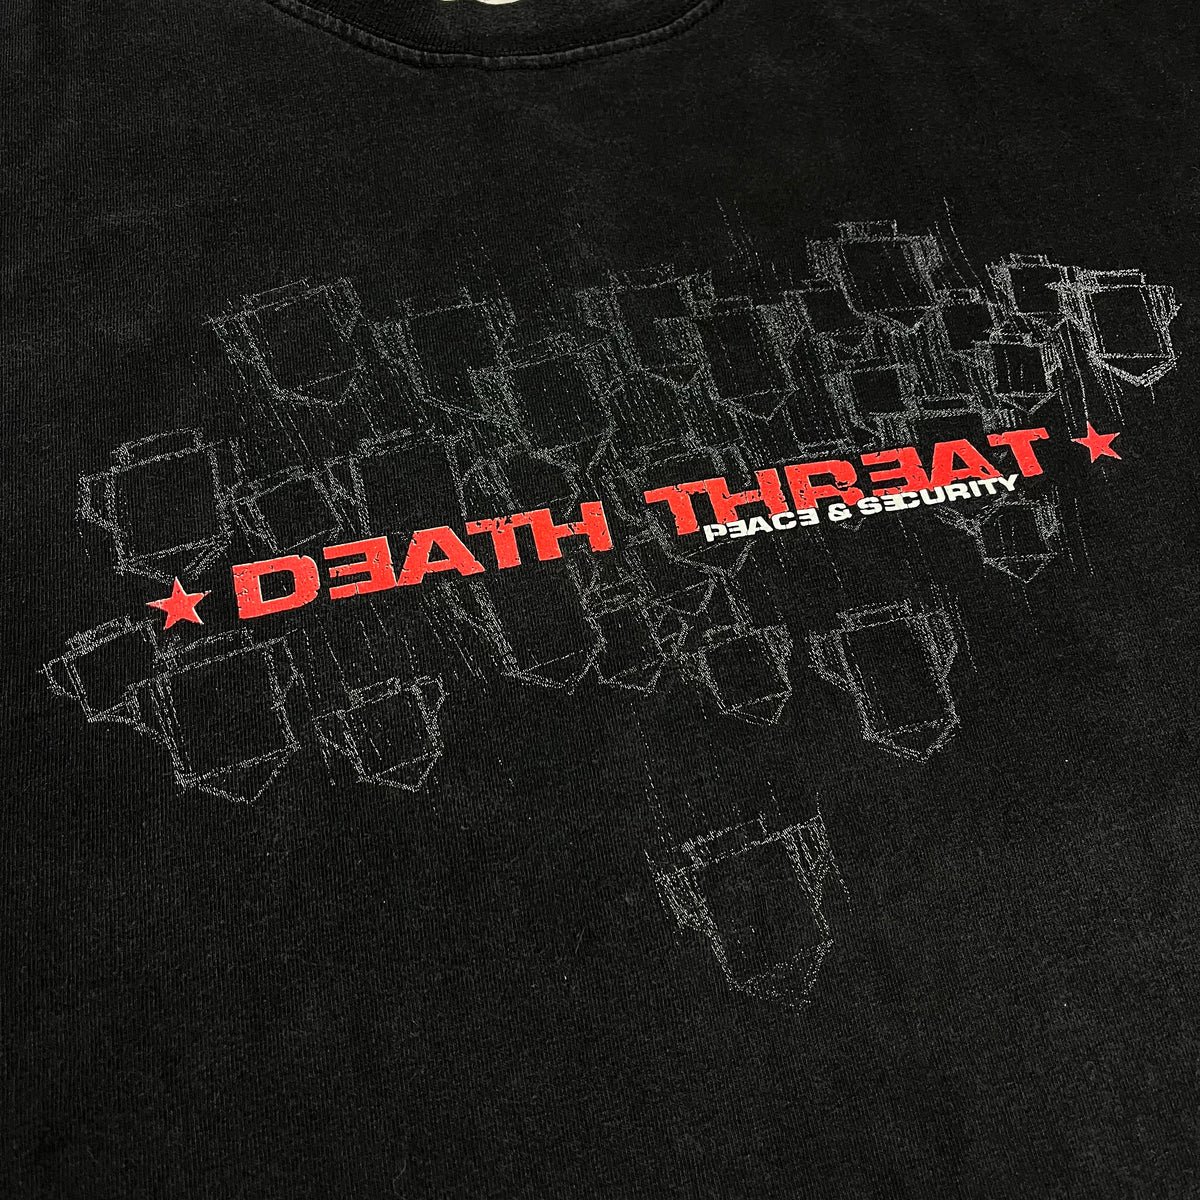 Vintage Death Threat &quot;Peace &amp; Security&quot; Disgrace T-Shirt